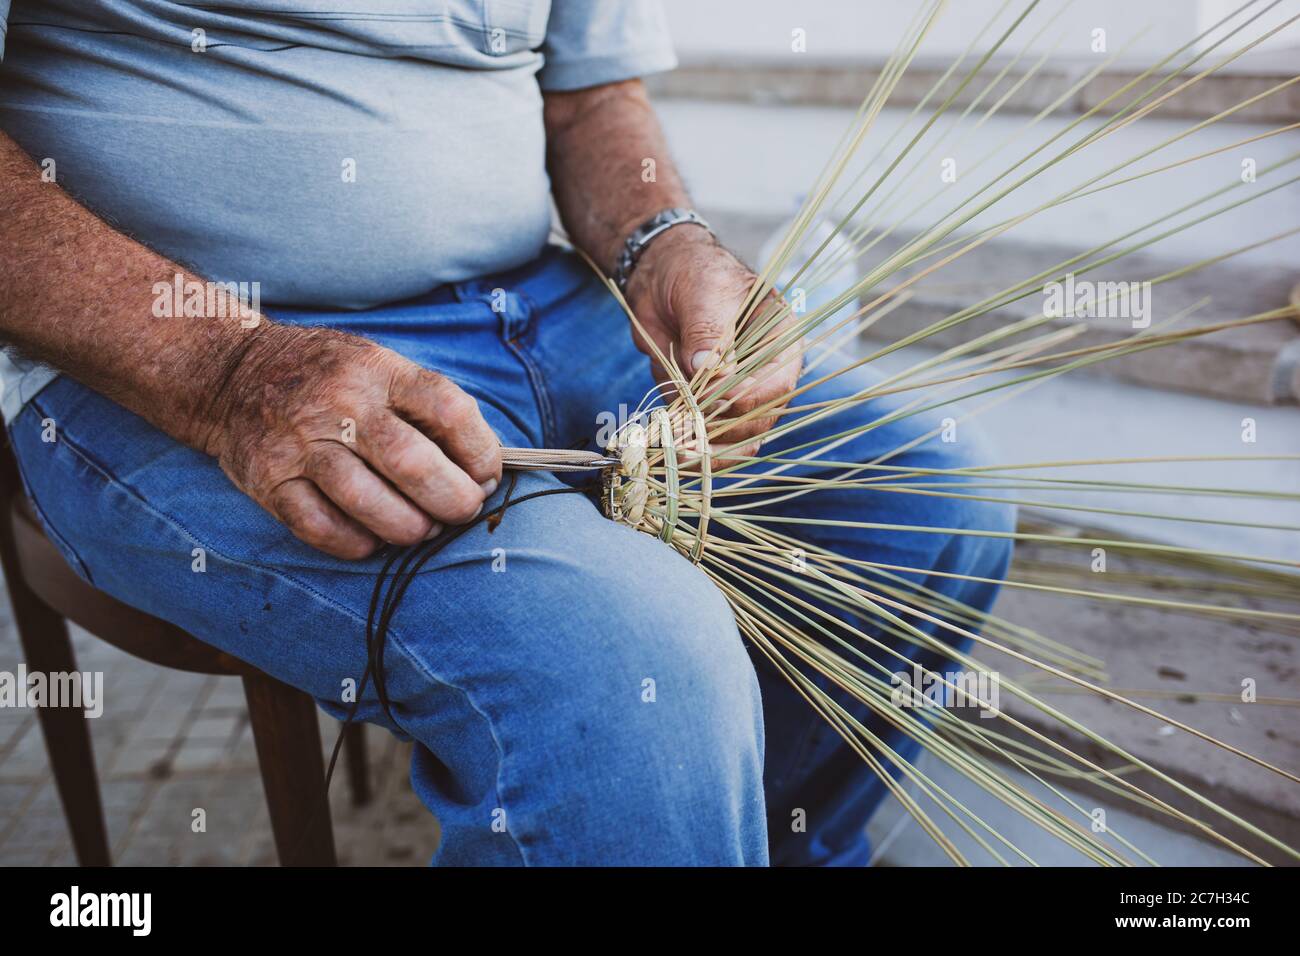 Gallipoli, Italie - 11 août 2014 : l'homme âgé fabrique des paniers pour l'industrie de la pêche de la manière traditionnelle, Puglia en Italie. Banque D'Images